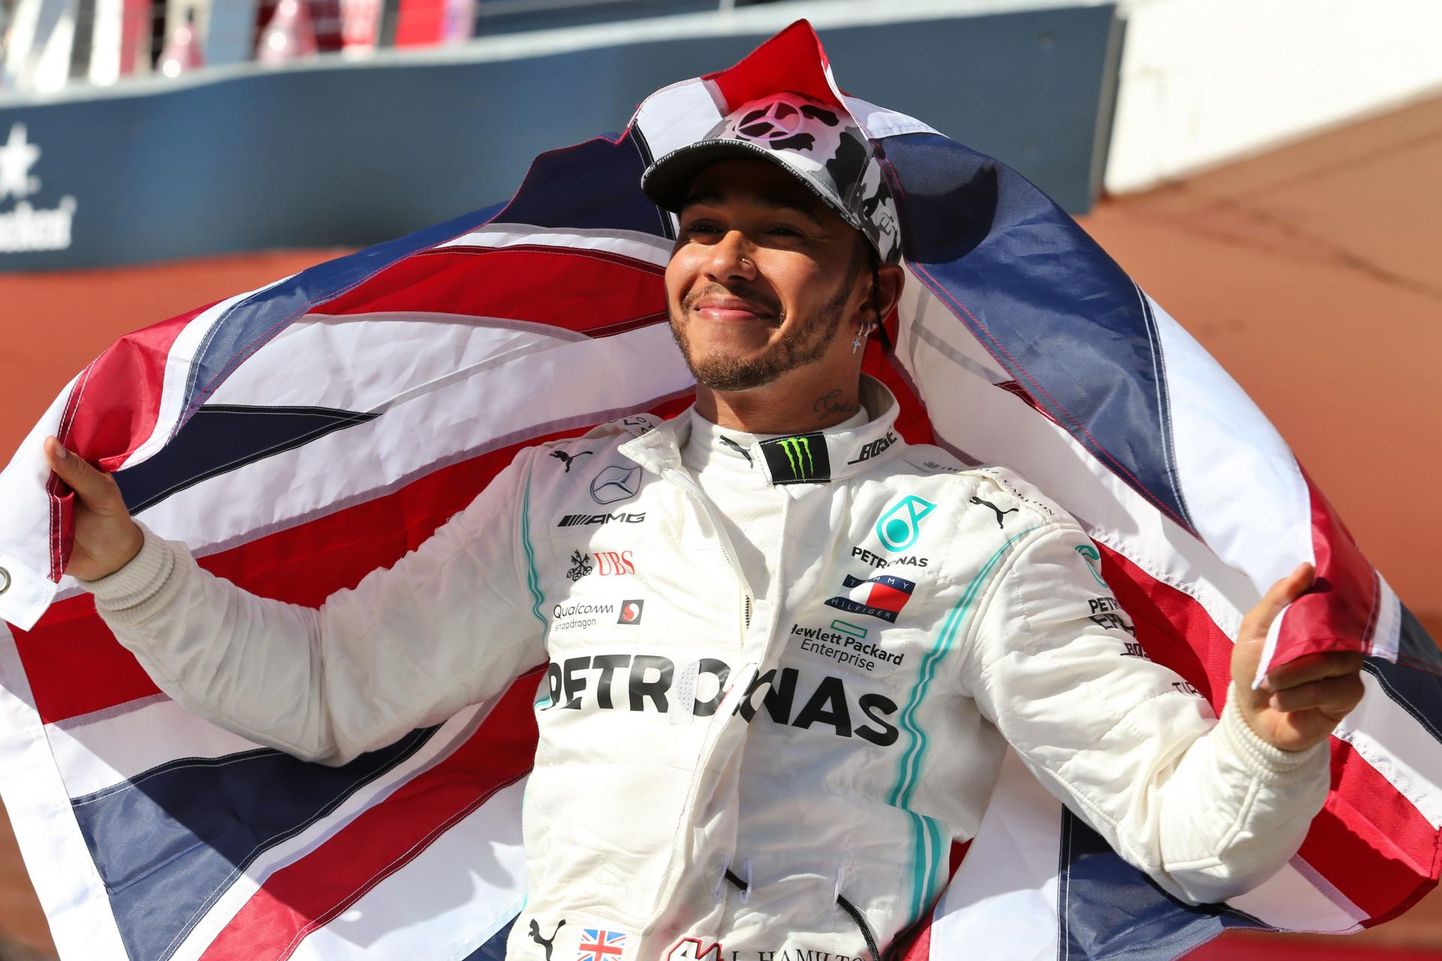 Tänavuse vormelihooaja suveräänne valitseja, kuuekordseks maailmameistriks kroonitud Lewis Hamilton.